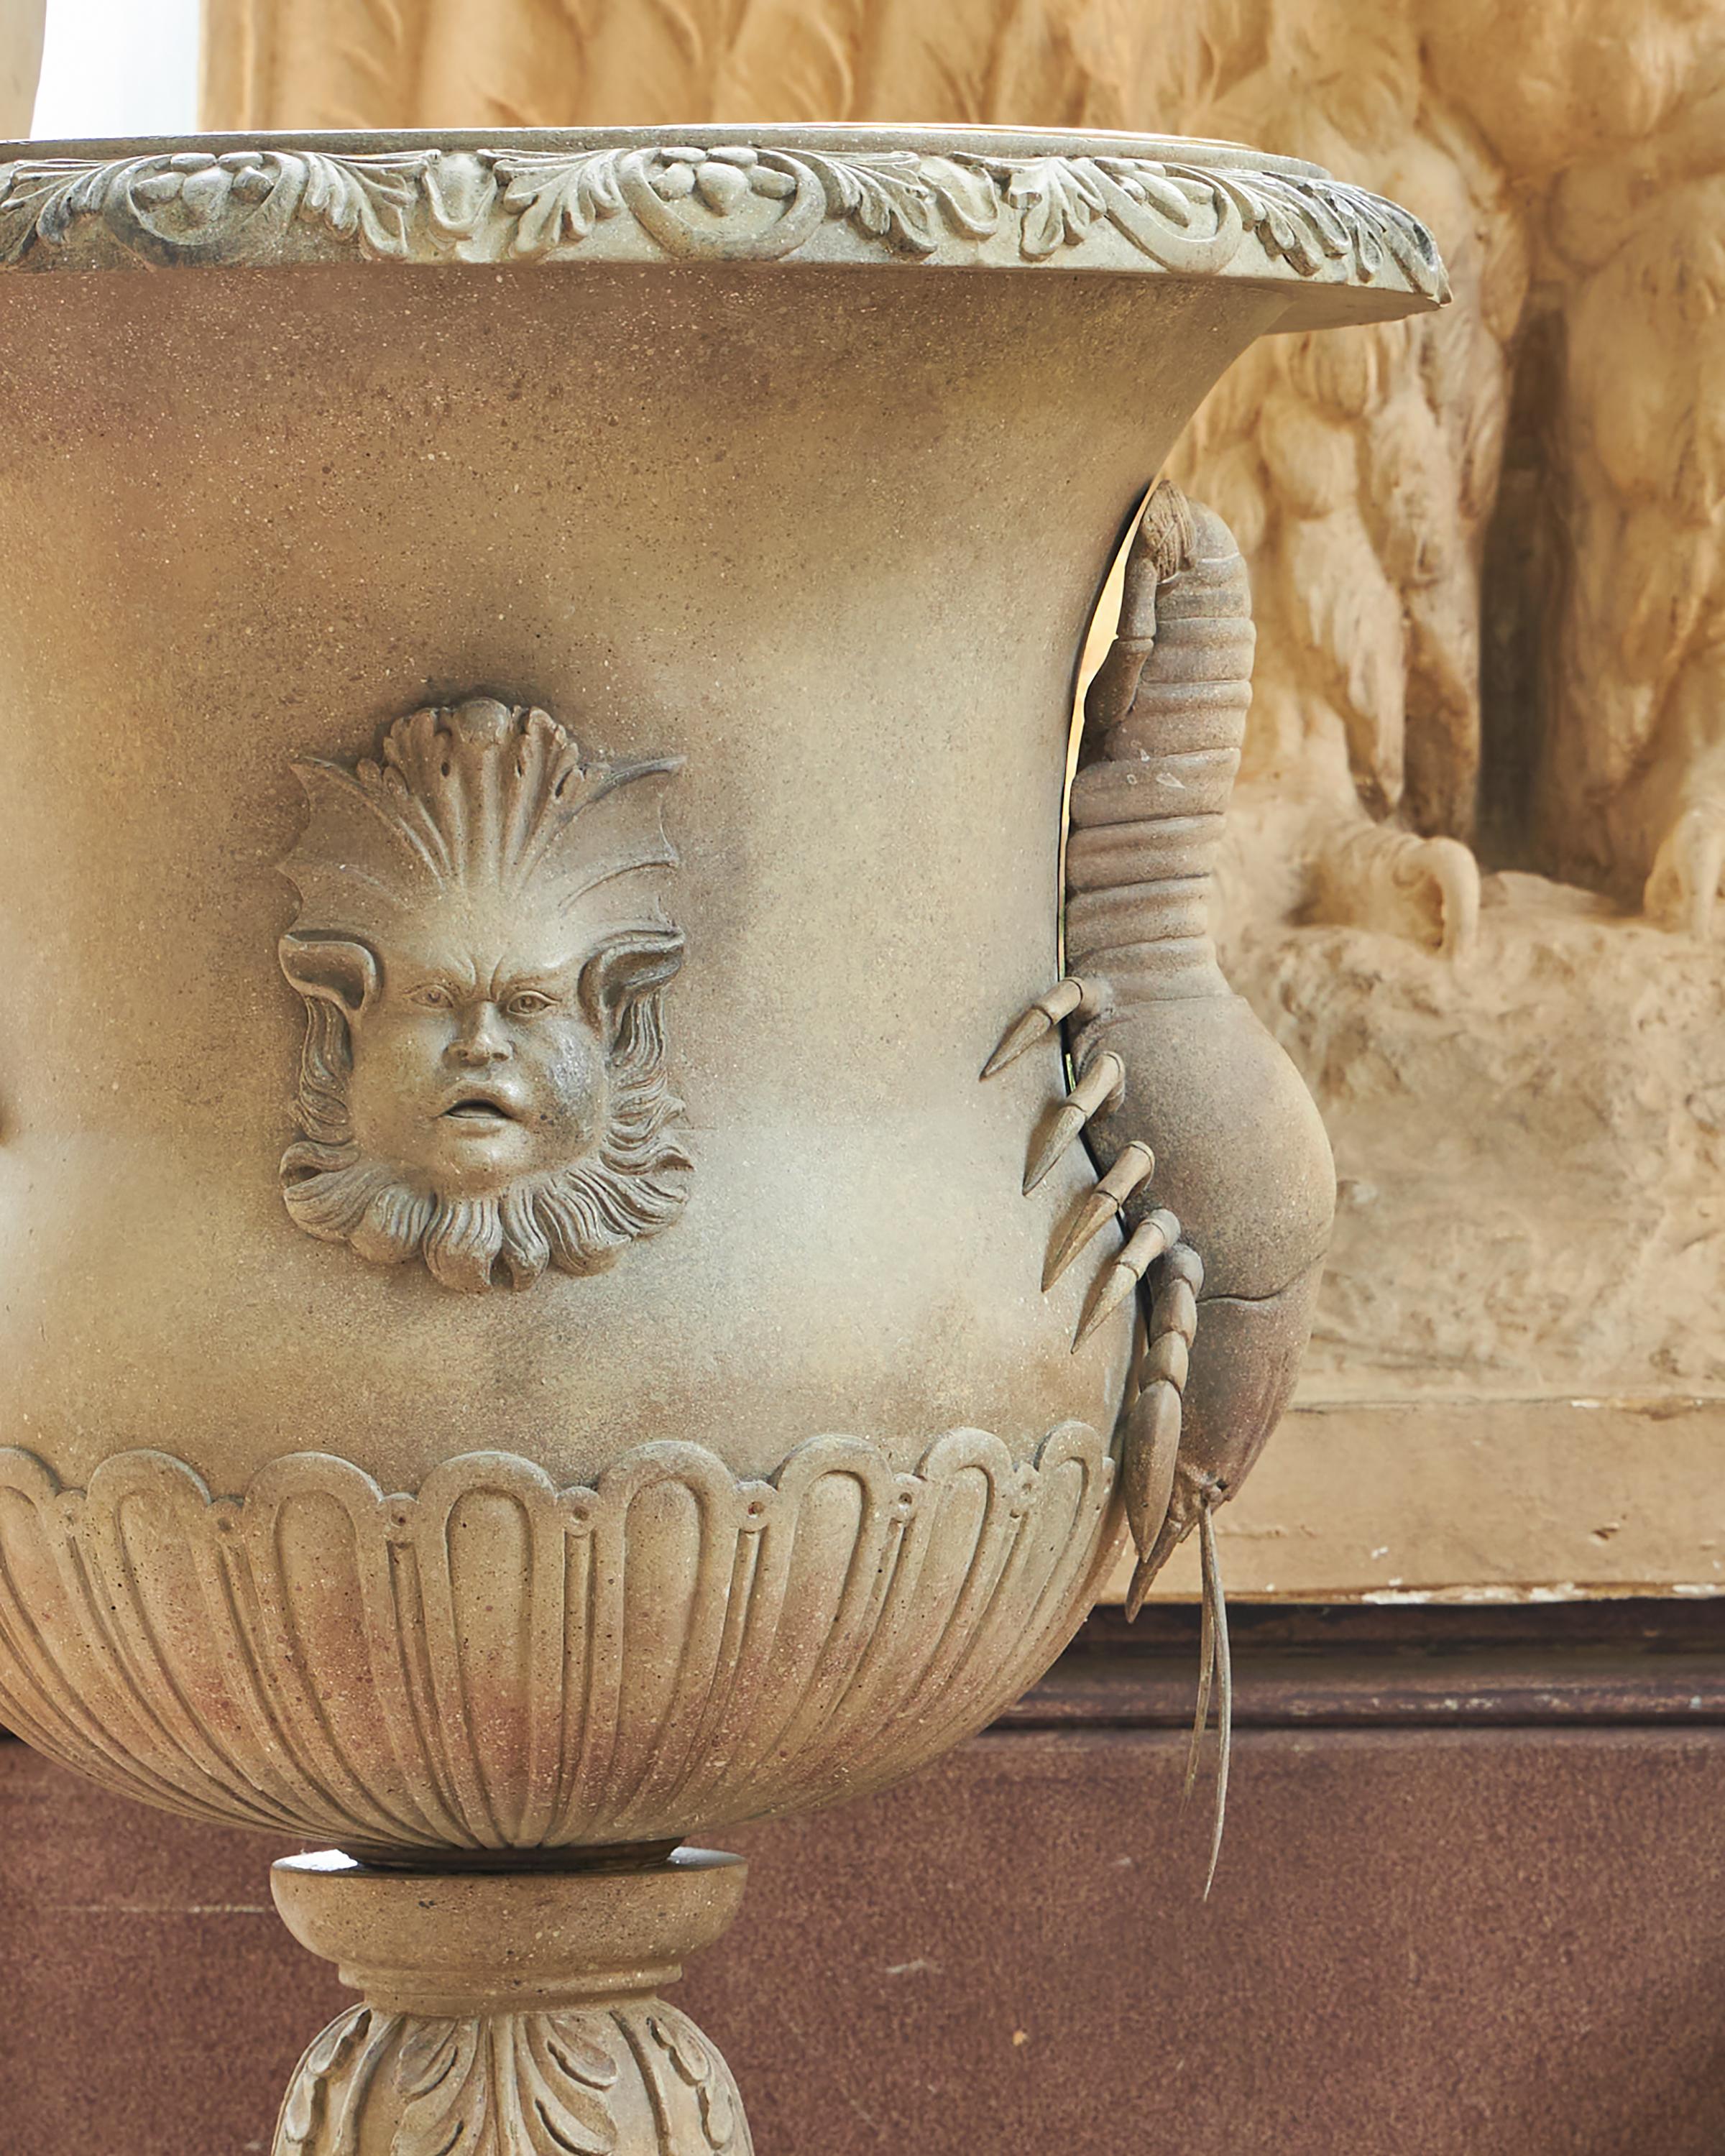 Eine fein geschnitzte Holz- und Gesso-Urne mit maßgeschneidertem Messingeinsatz. Diese Urnen werden häufig als Pflanzgefäße oder große Weinkübel verwendet. Maßgeschneiderte Veredelung möglich.